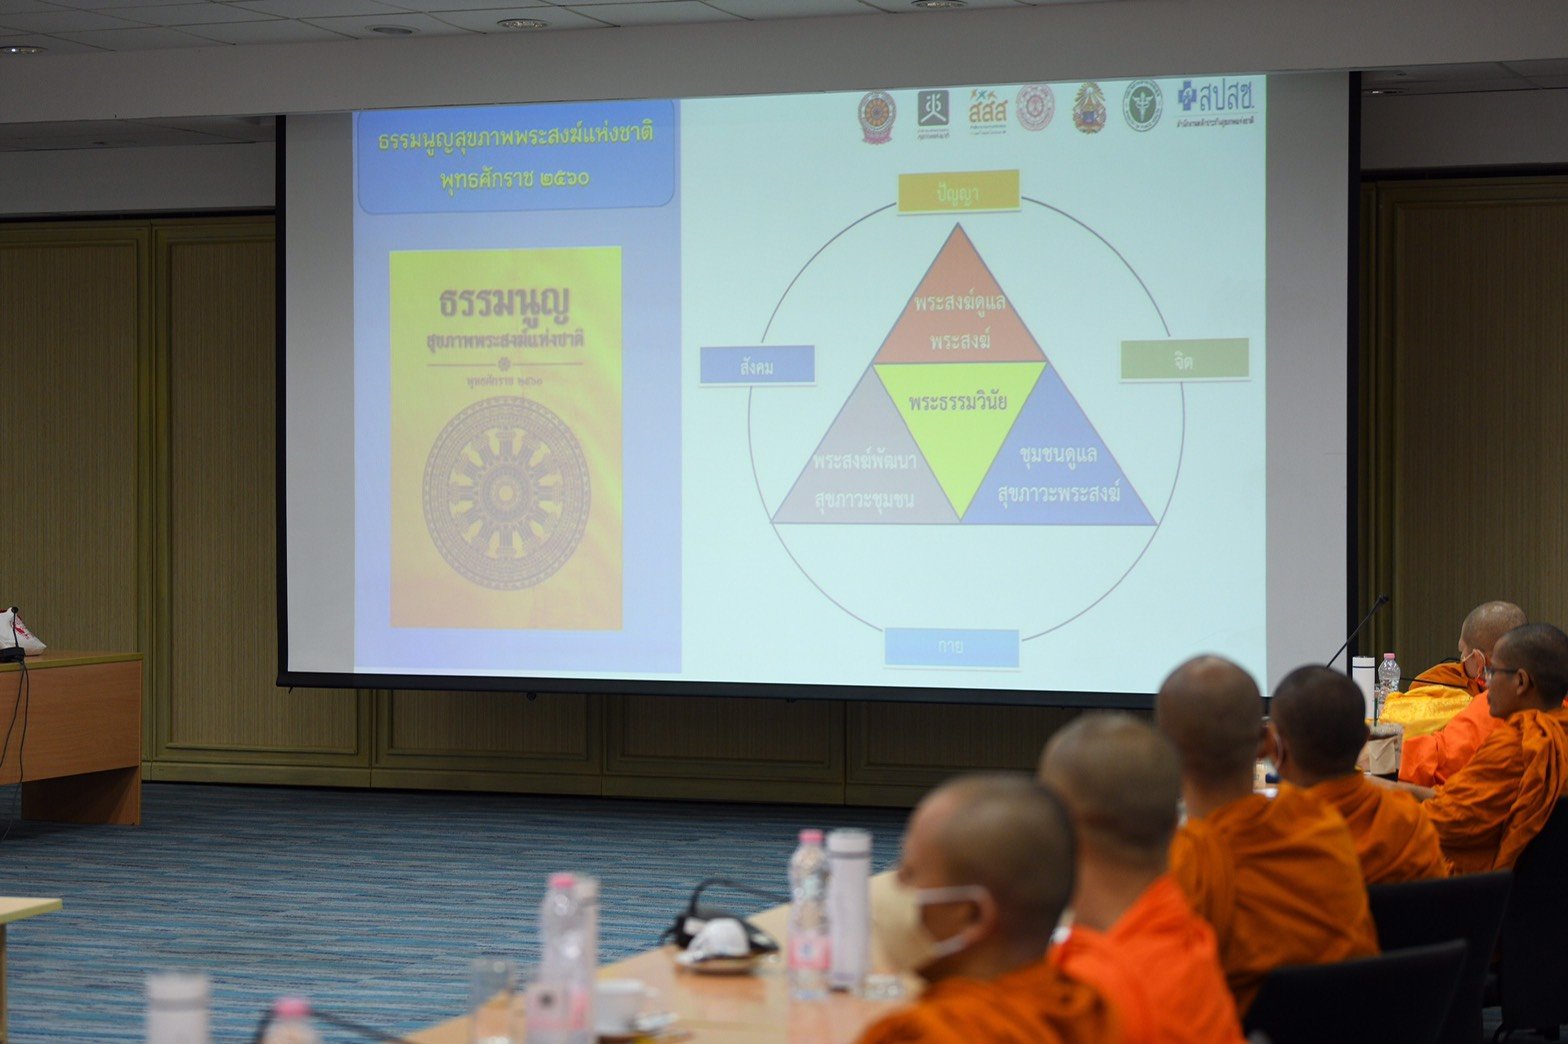 ขับเคลื่อนธรรมนูญสุขภาพพระสงฆ์ ผู้นำสุขภาวะชุมชนและสังคม thaihealth